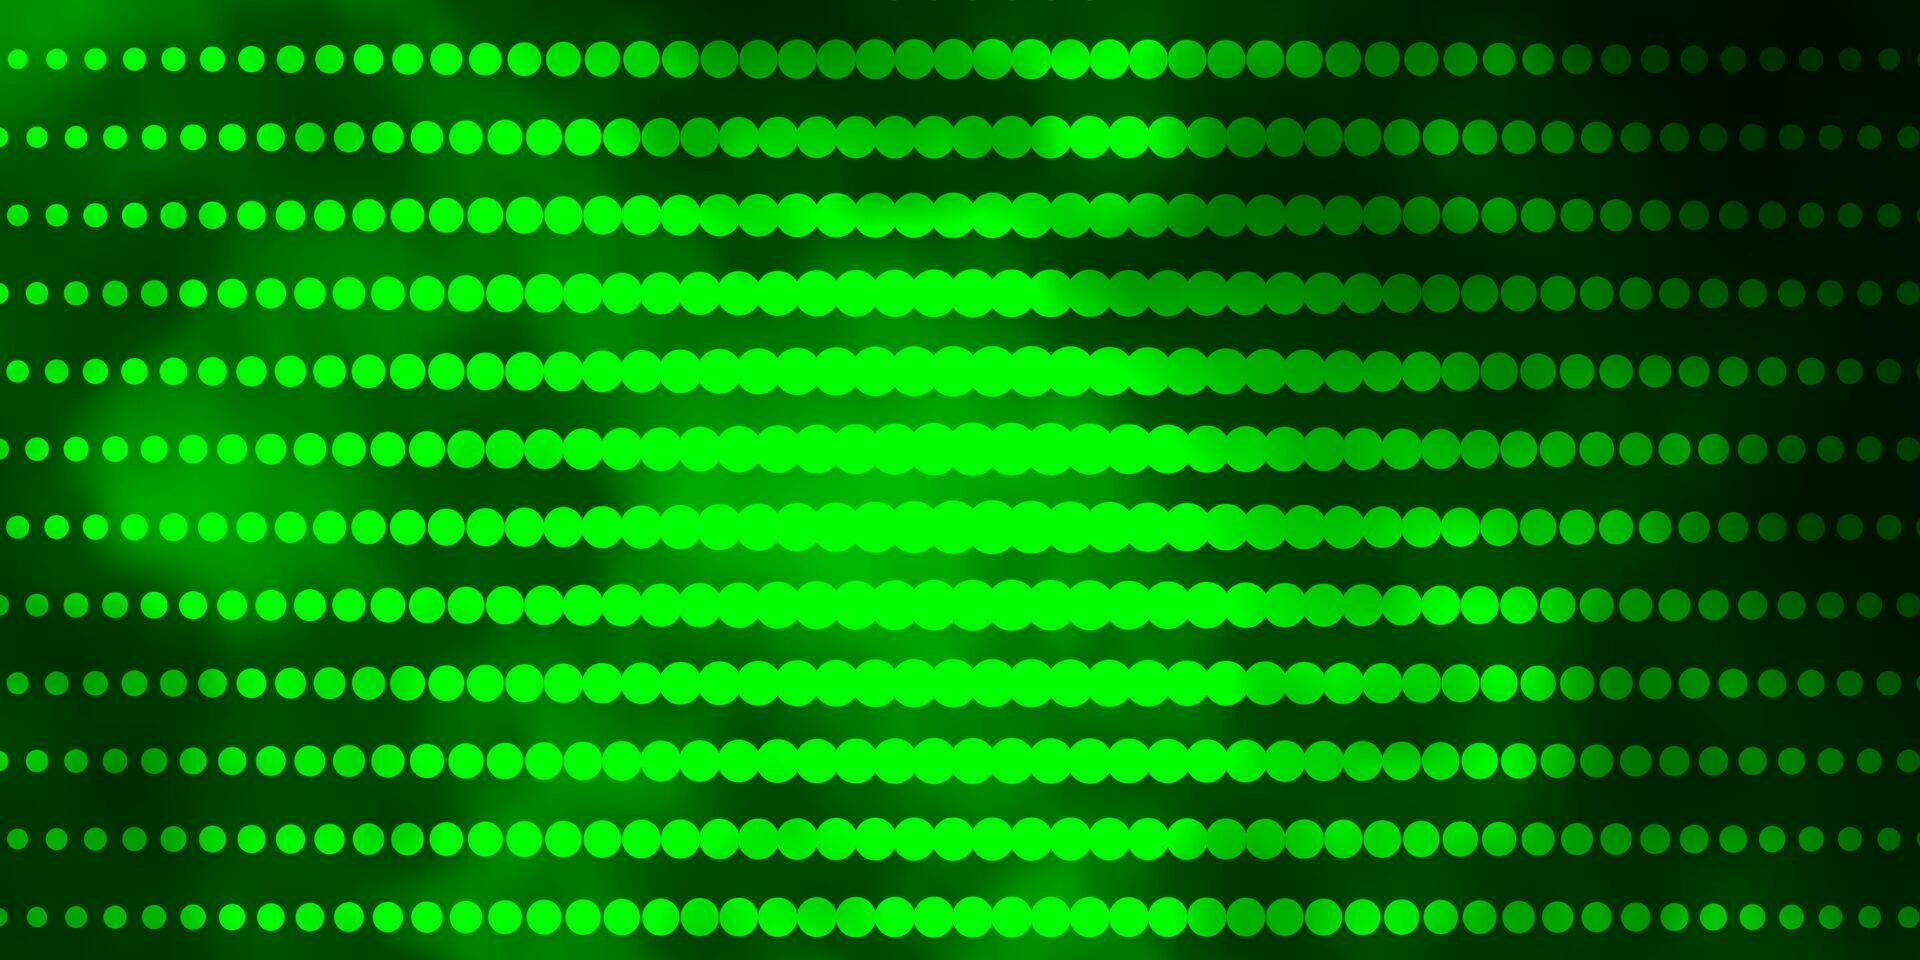 sfondo vettoriale verde chiaro con cerchi.